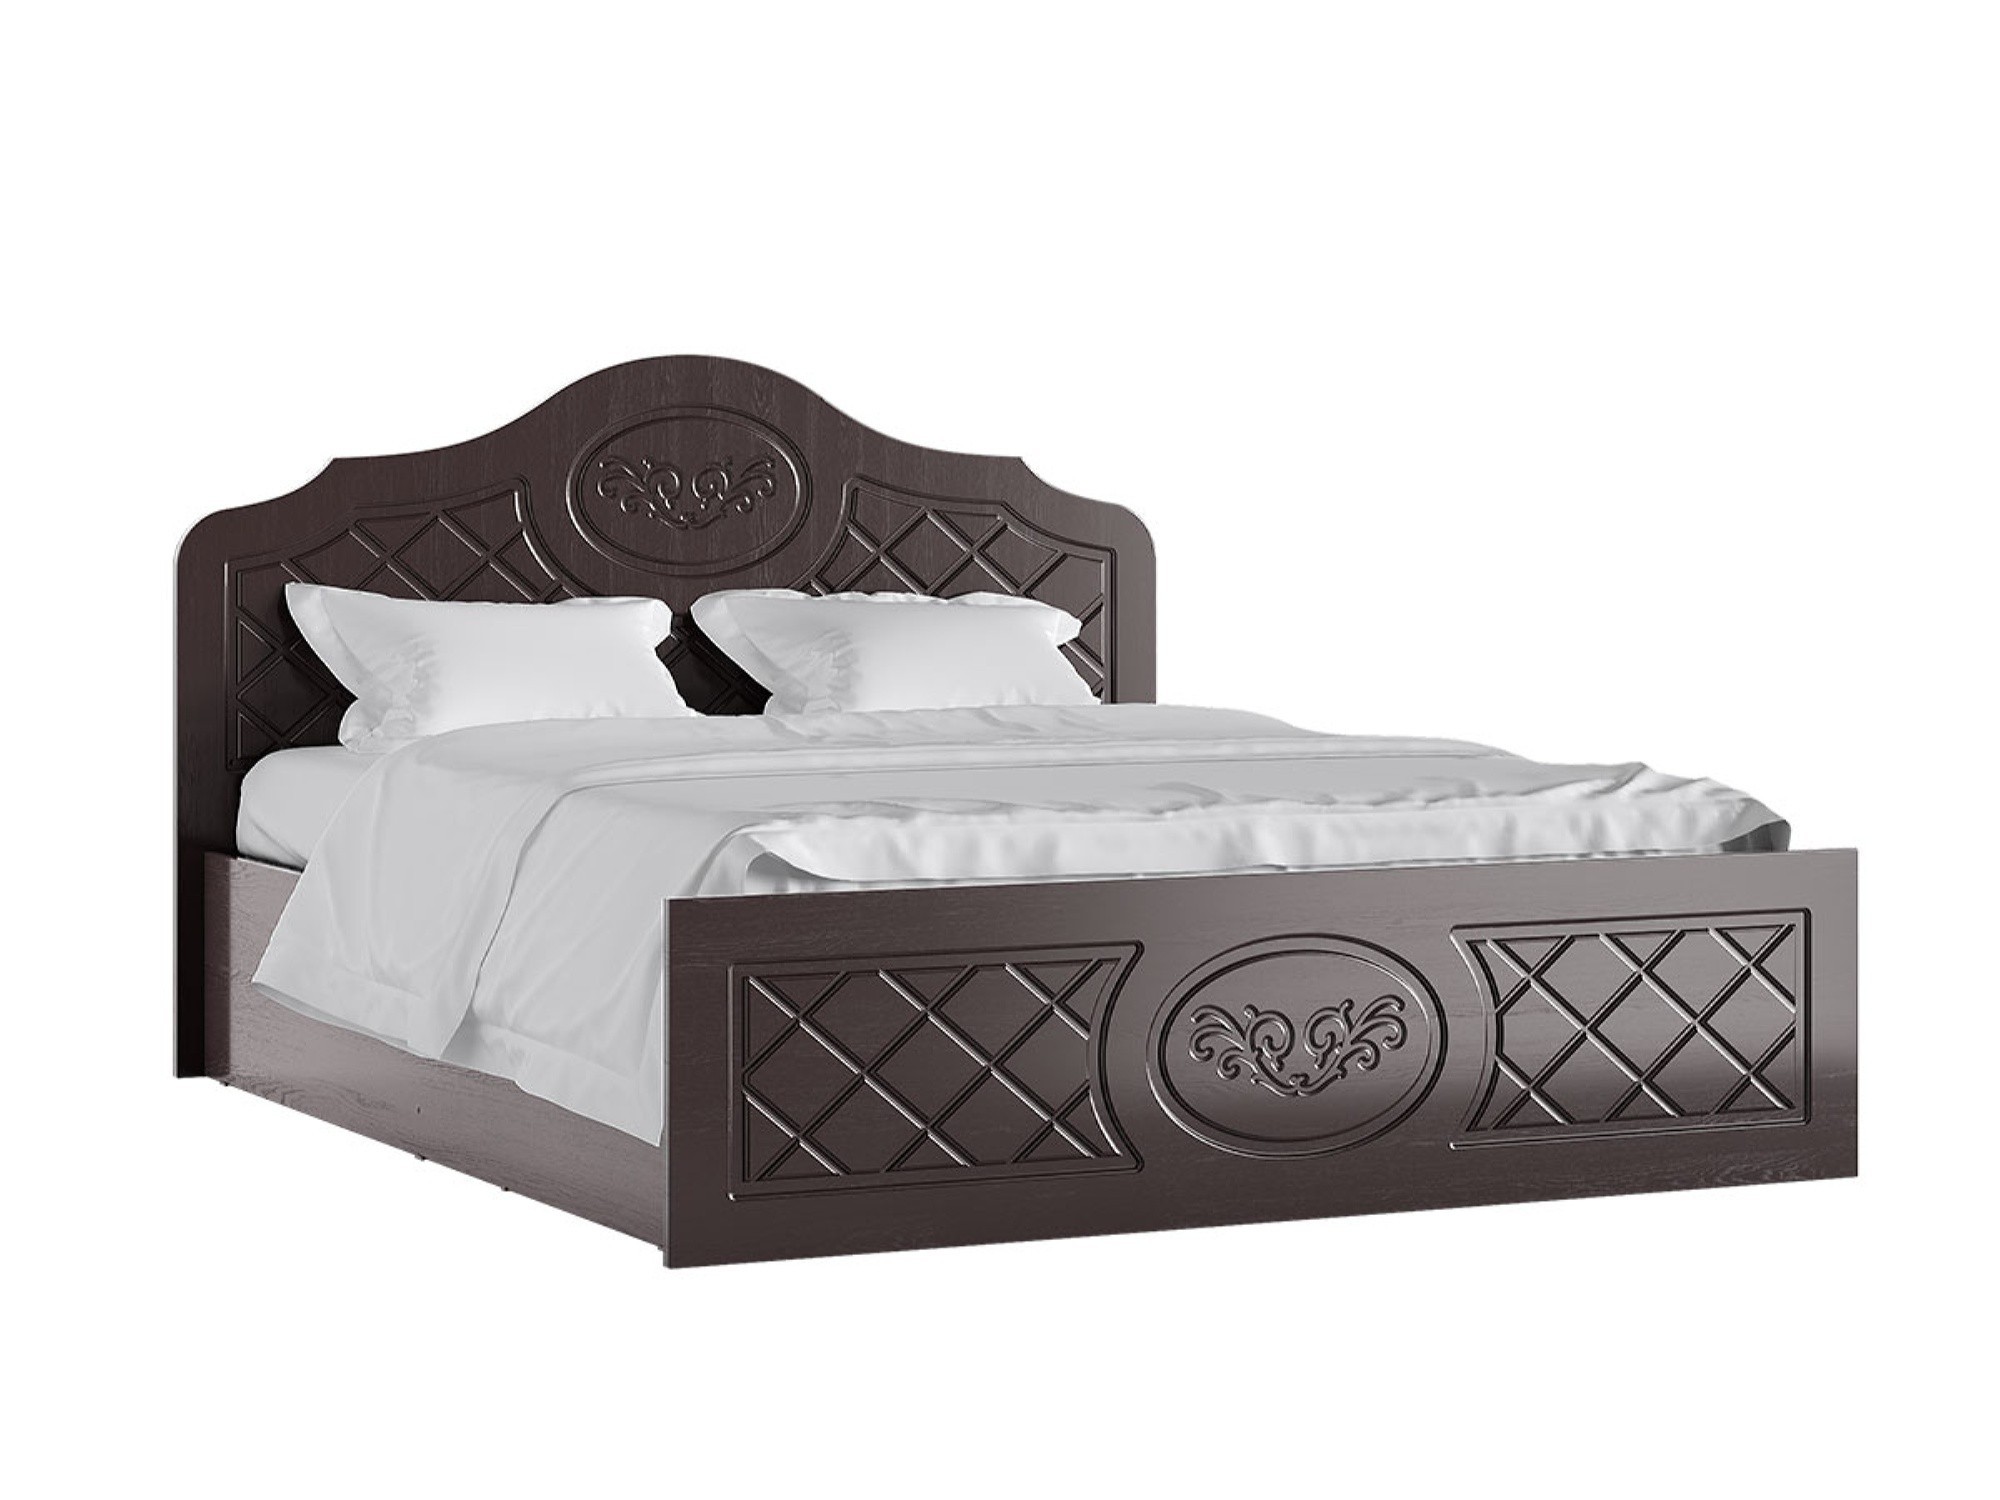 Престиж Кровать 140 (Венге шоколад) Венге шоколад, МДФ, ЛДСП престиж кровать 140 венге шоколад жемчуг белый лдсп